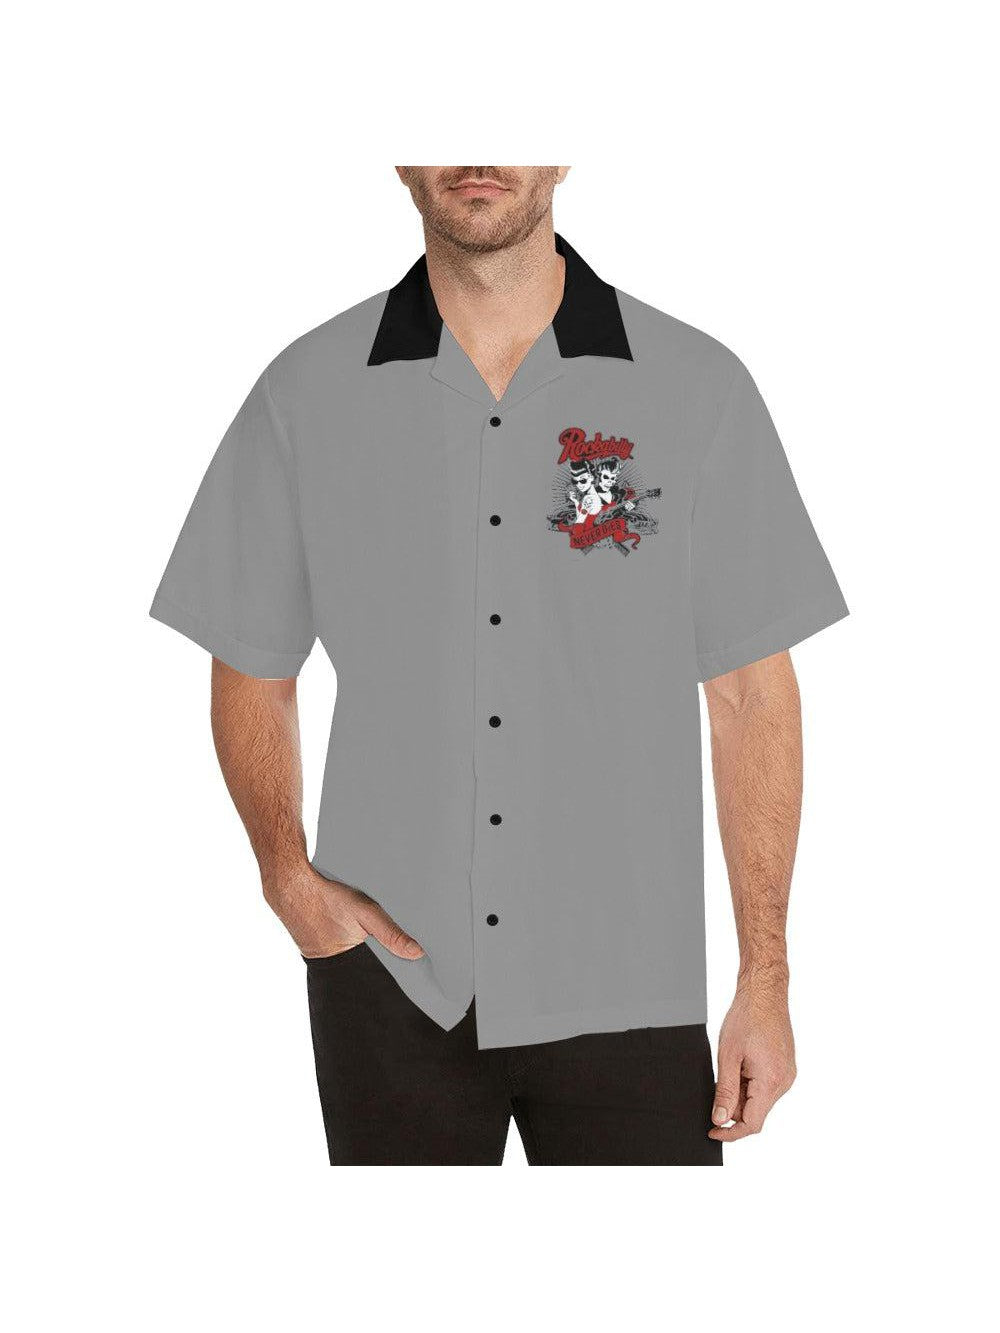 Rockabilly Never Dies Button Up Shirt